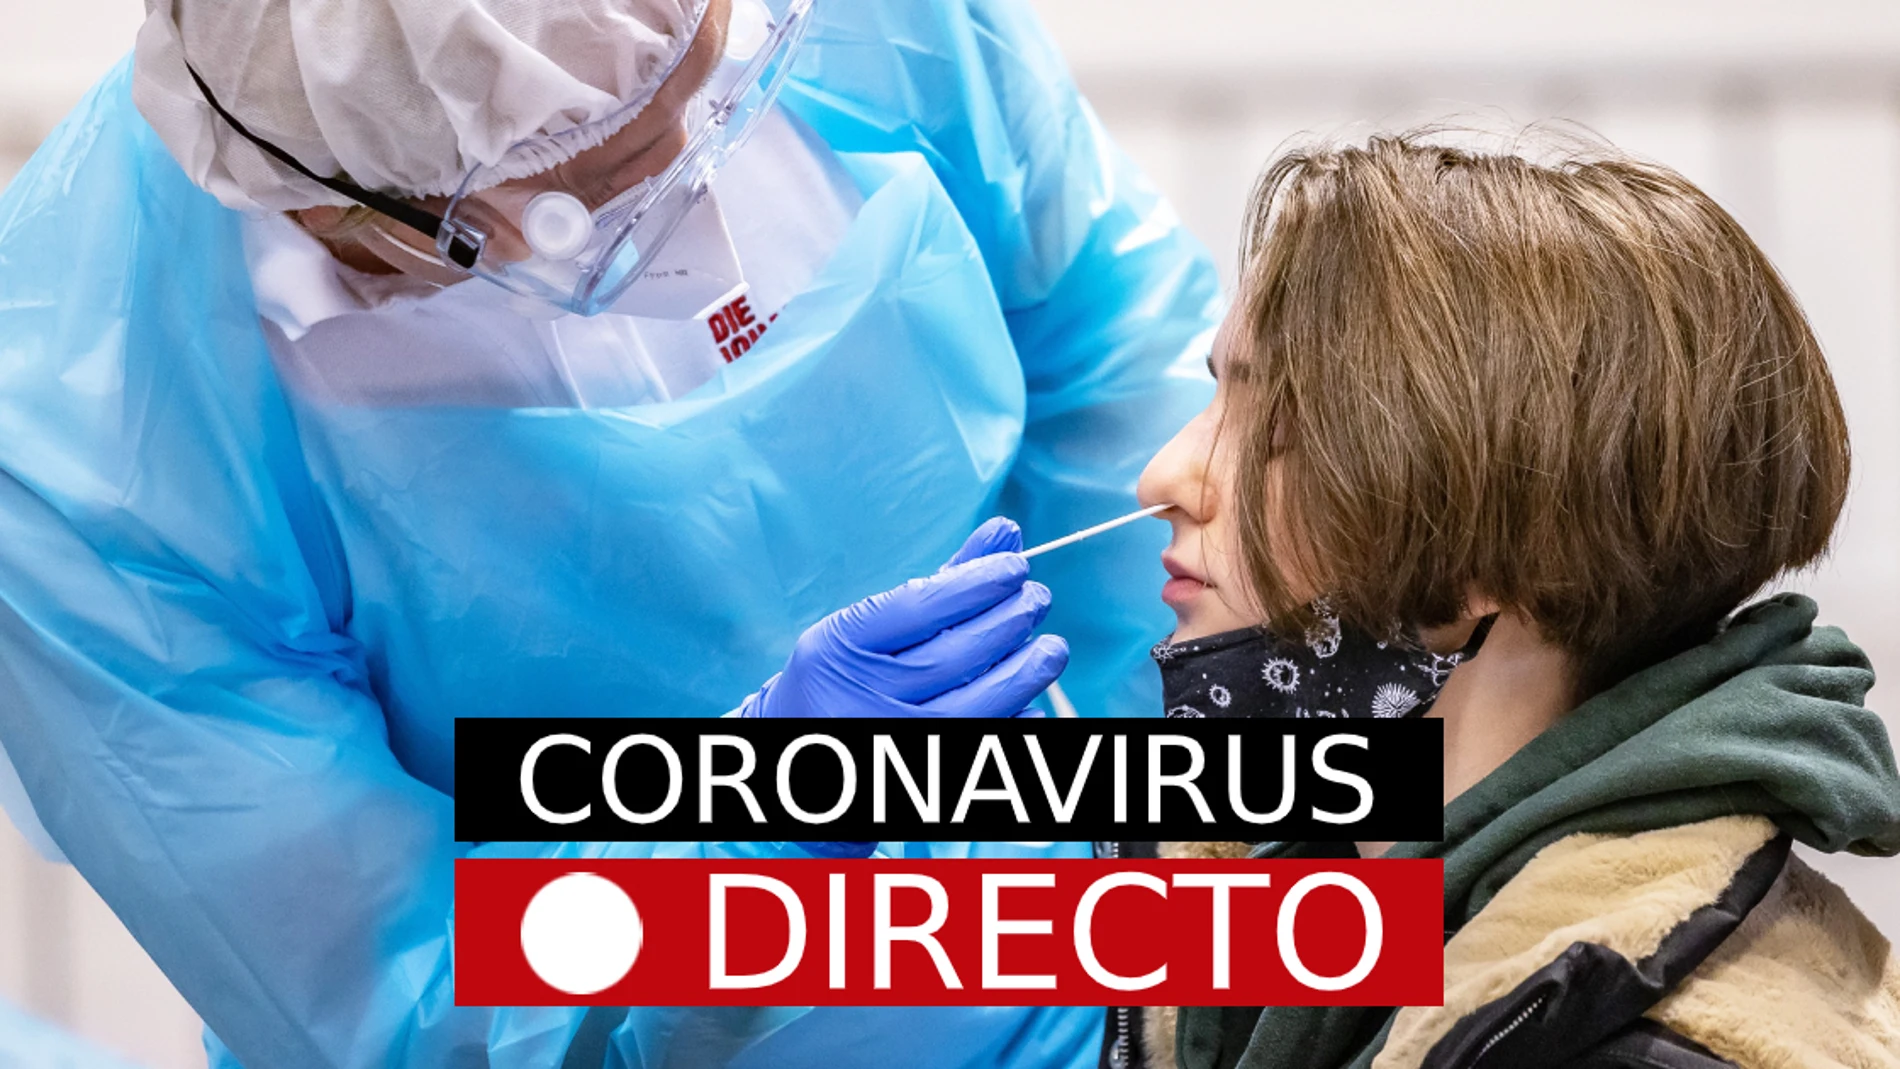 Coronavirus España | Noticias de la vacuna por el COVID-19, casos y restricciones, en directo